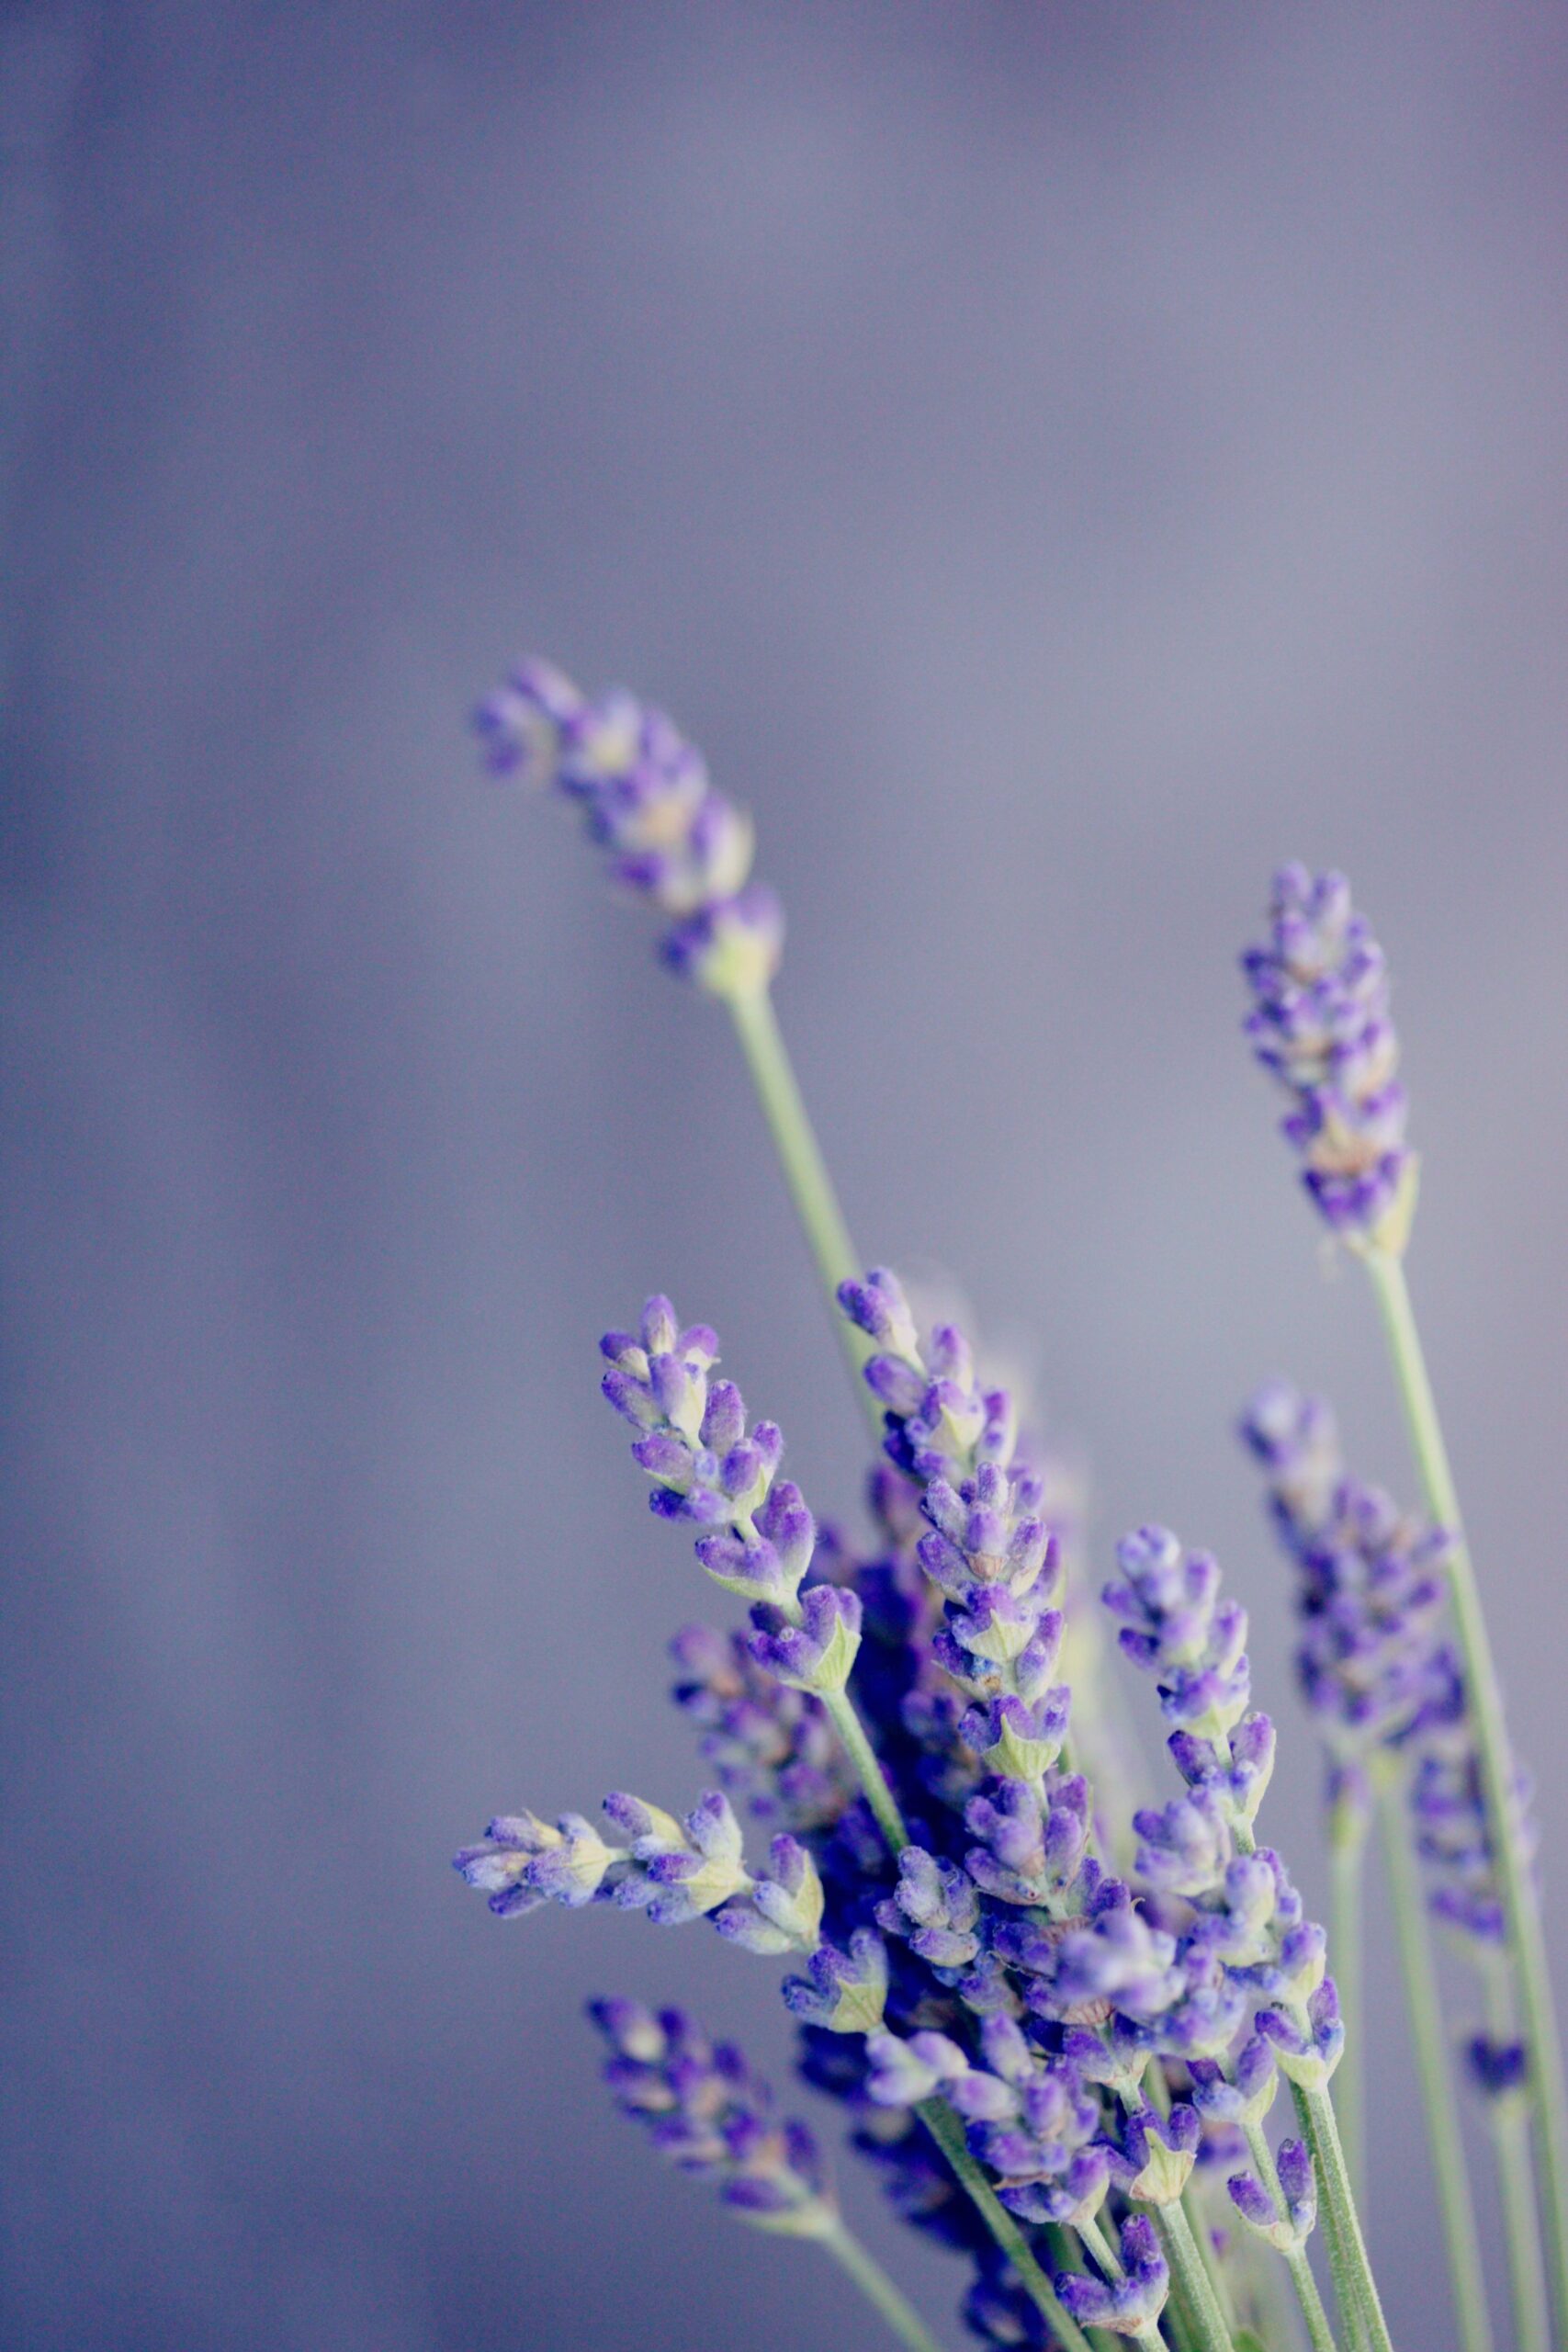 Hoa Lavender, Oải Hương: Tận hưởng giây phút thư giãn với những hình ảnh đẹp nhất về hoa Lavender, oải hương - những cánh hoa tím lung linh đến từ vùng đất trời Âu.